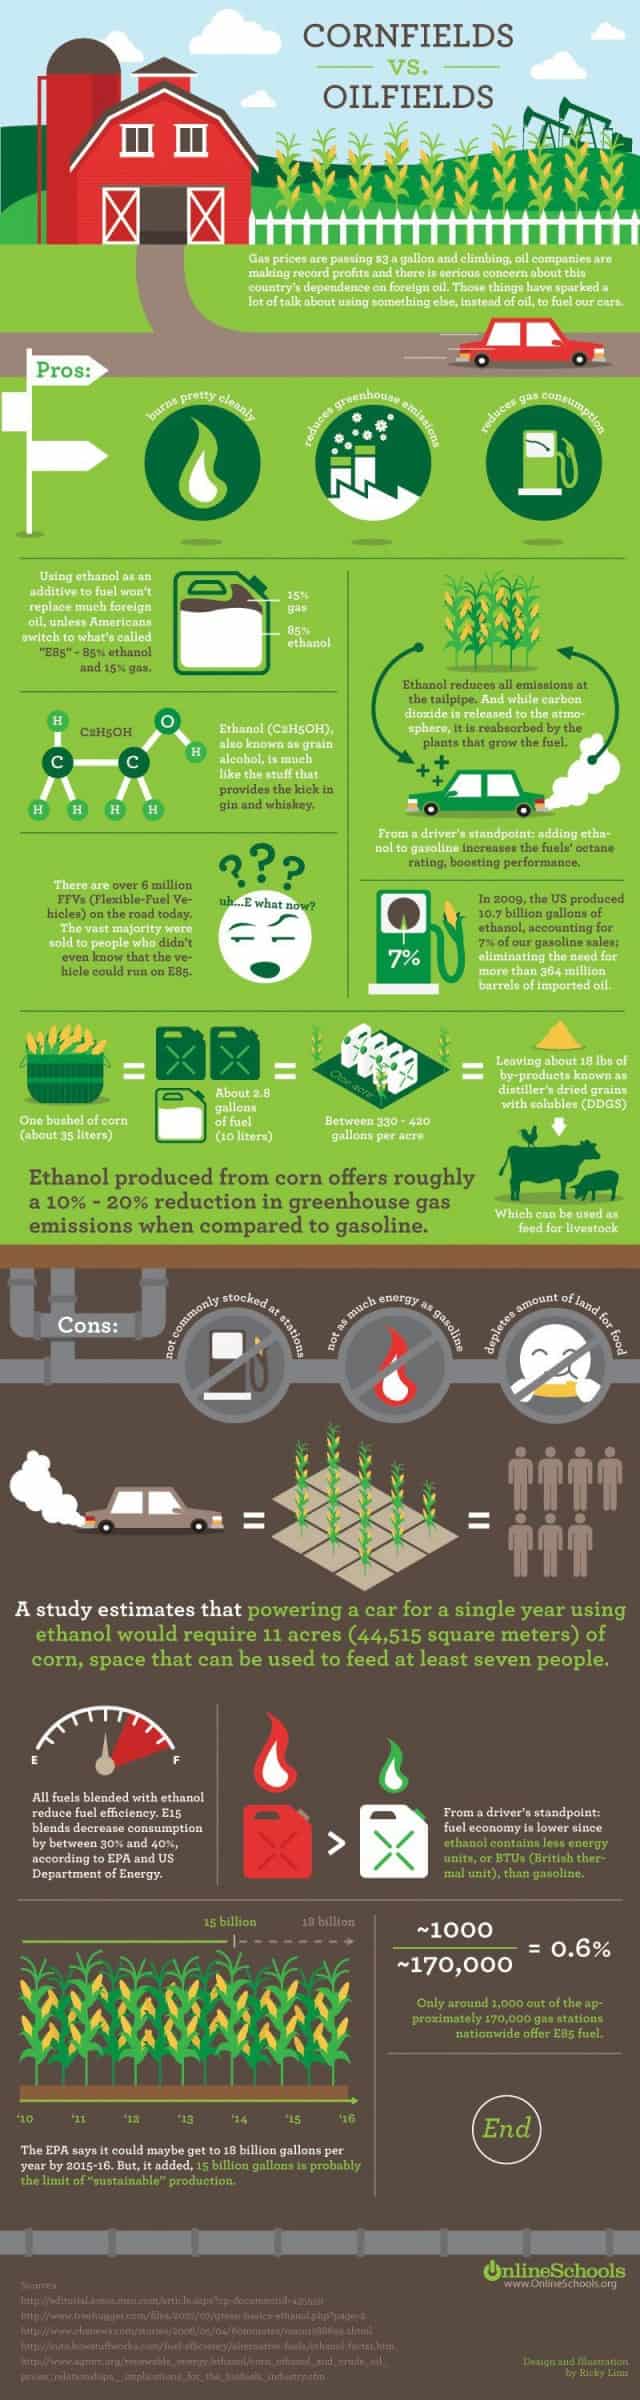 Ethanol vs. Oil